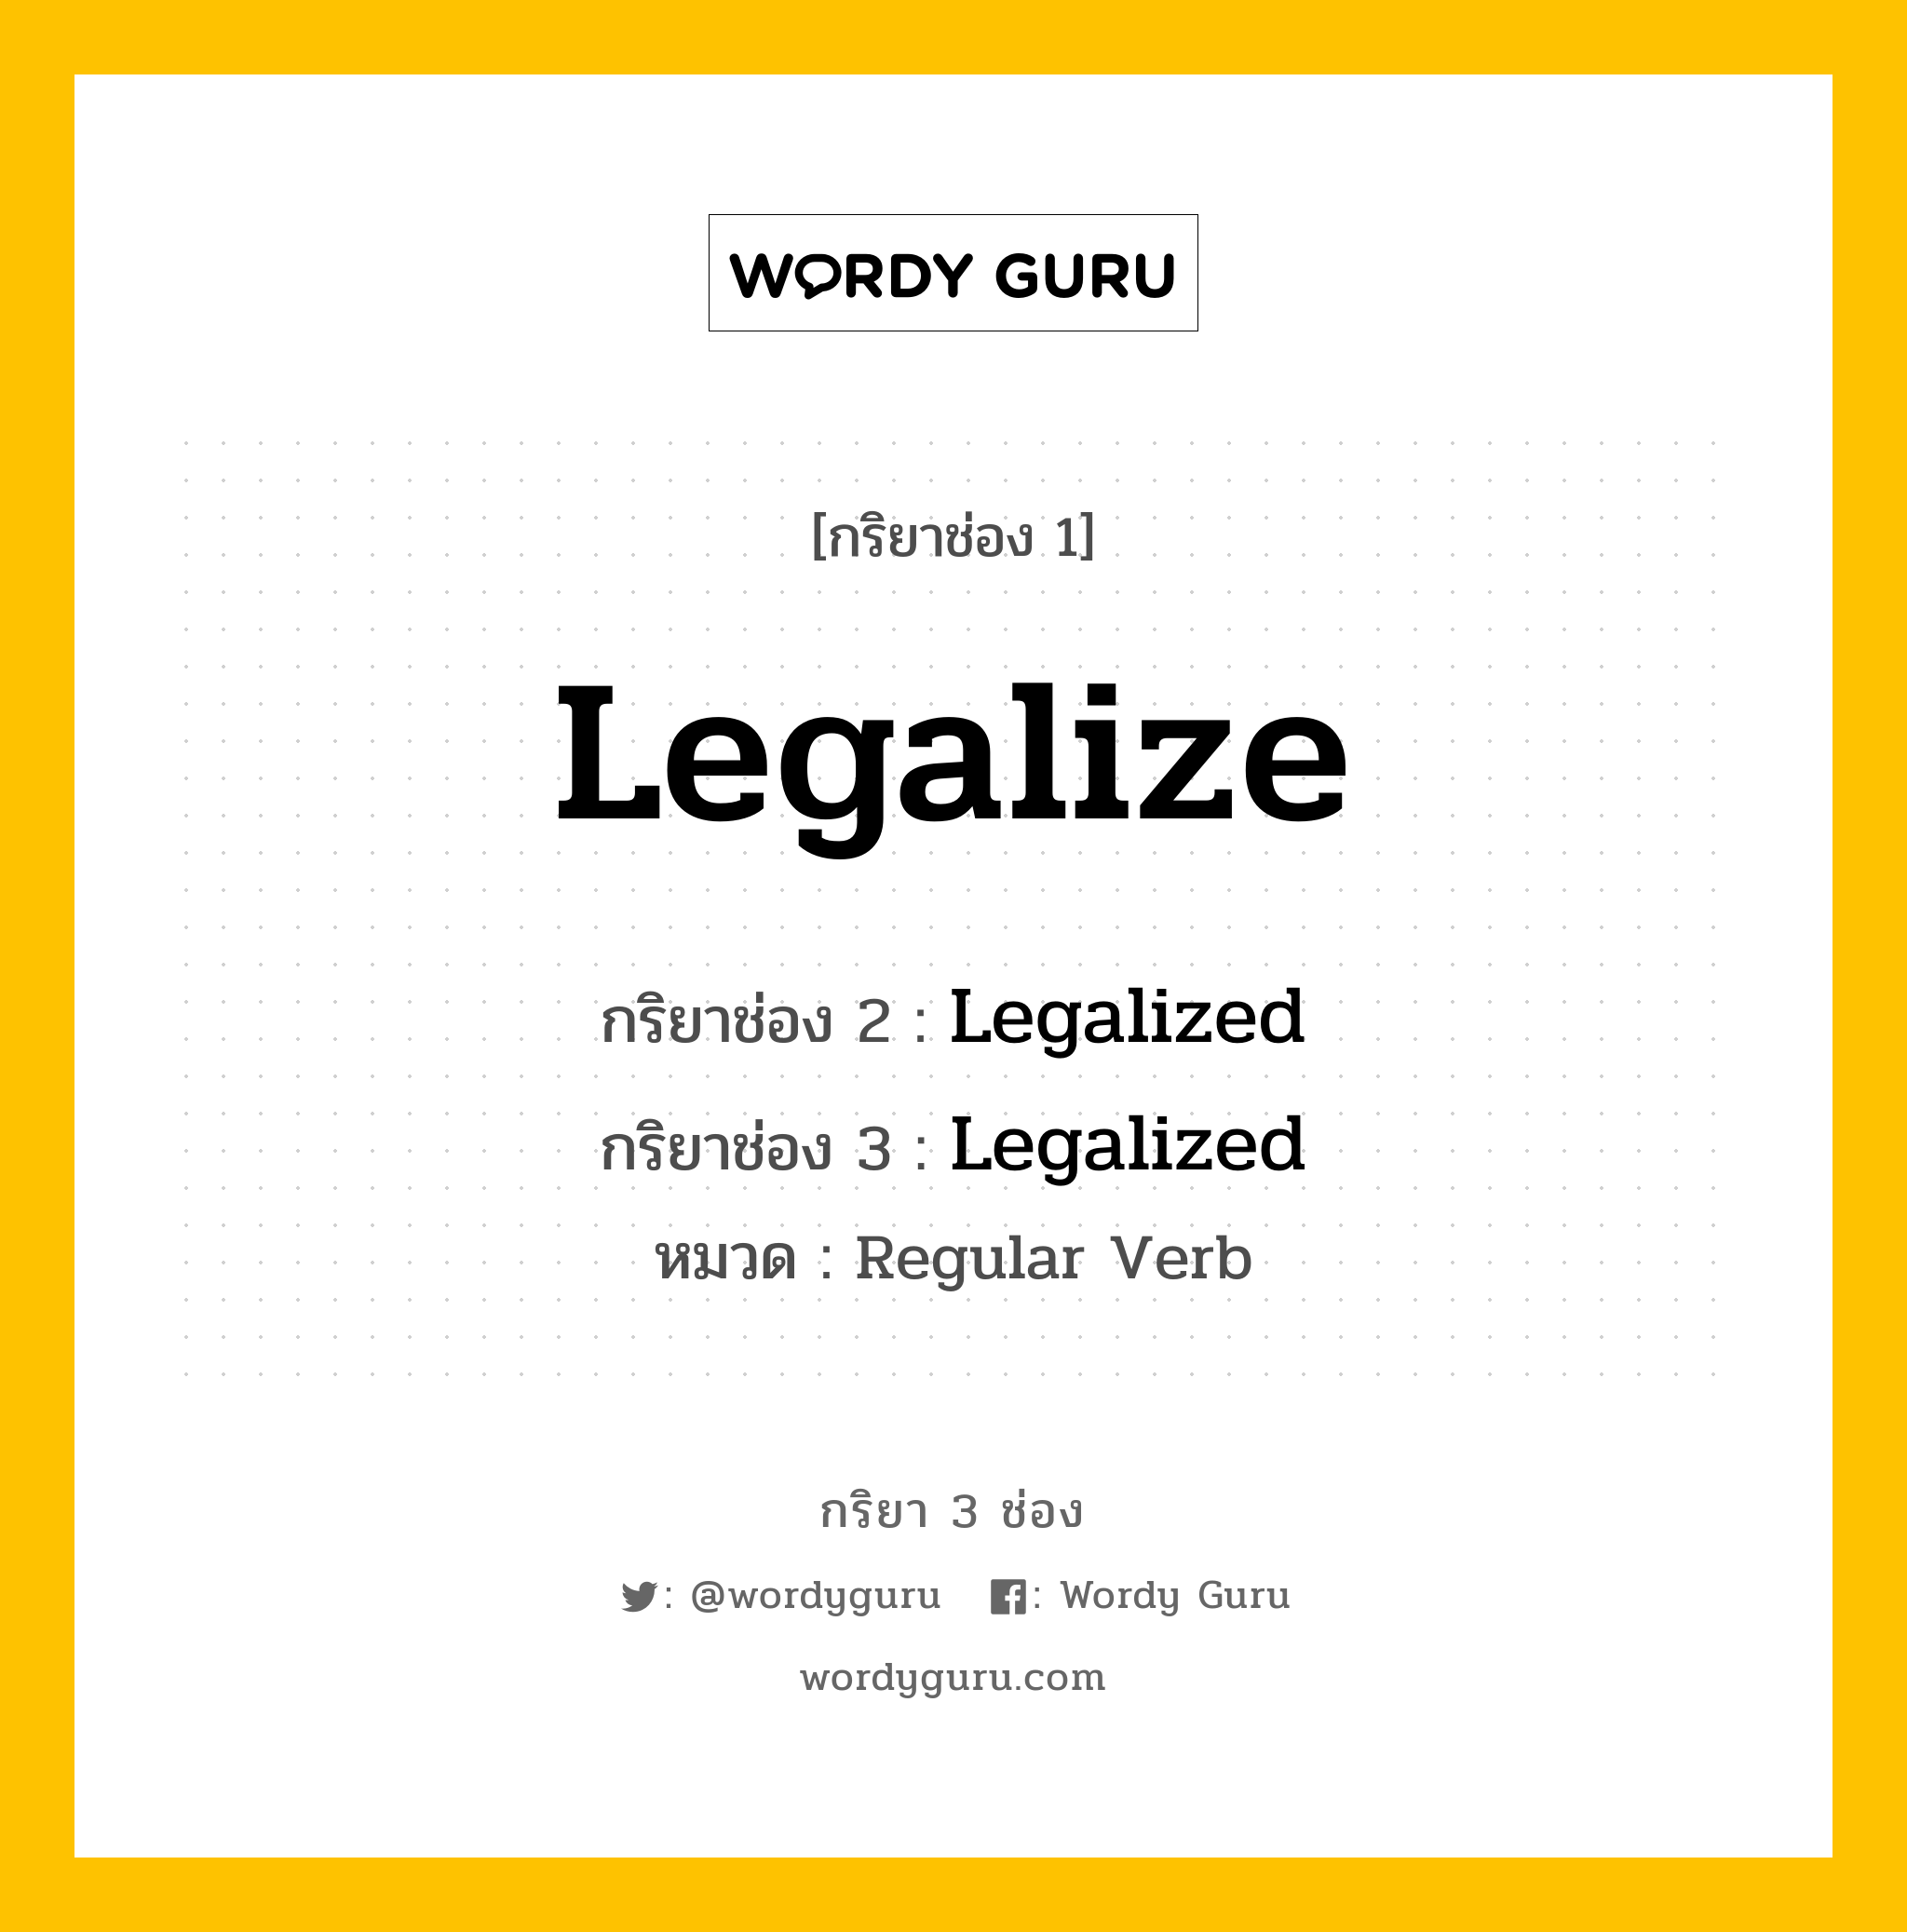 กริยา 3 ช่อง: Legalize ช่อง 2 Legalize ช่อง 3 คืออะไร, กริยาช่อง 1 Legalize กริยาช่อง 2 Legalized กริยาช่อง 3 Legalized หมวด Regular Verb หมวด Regular Verb